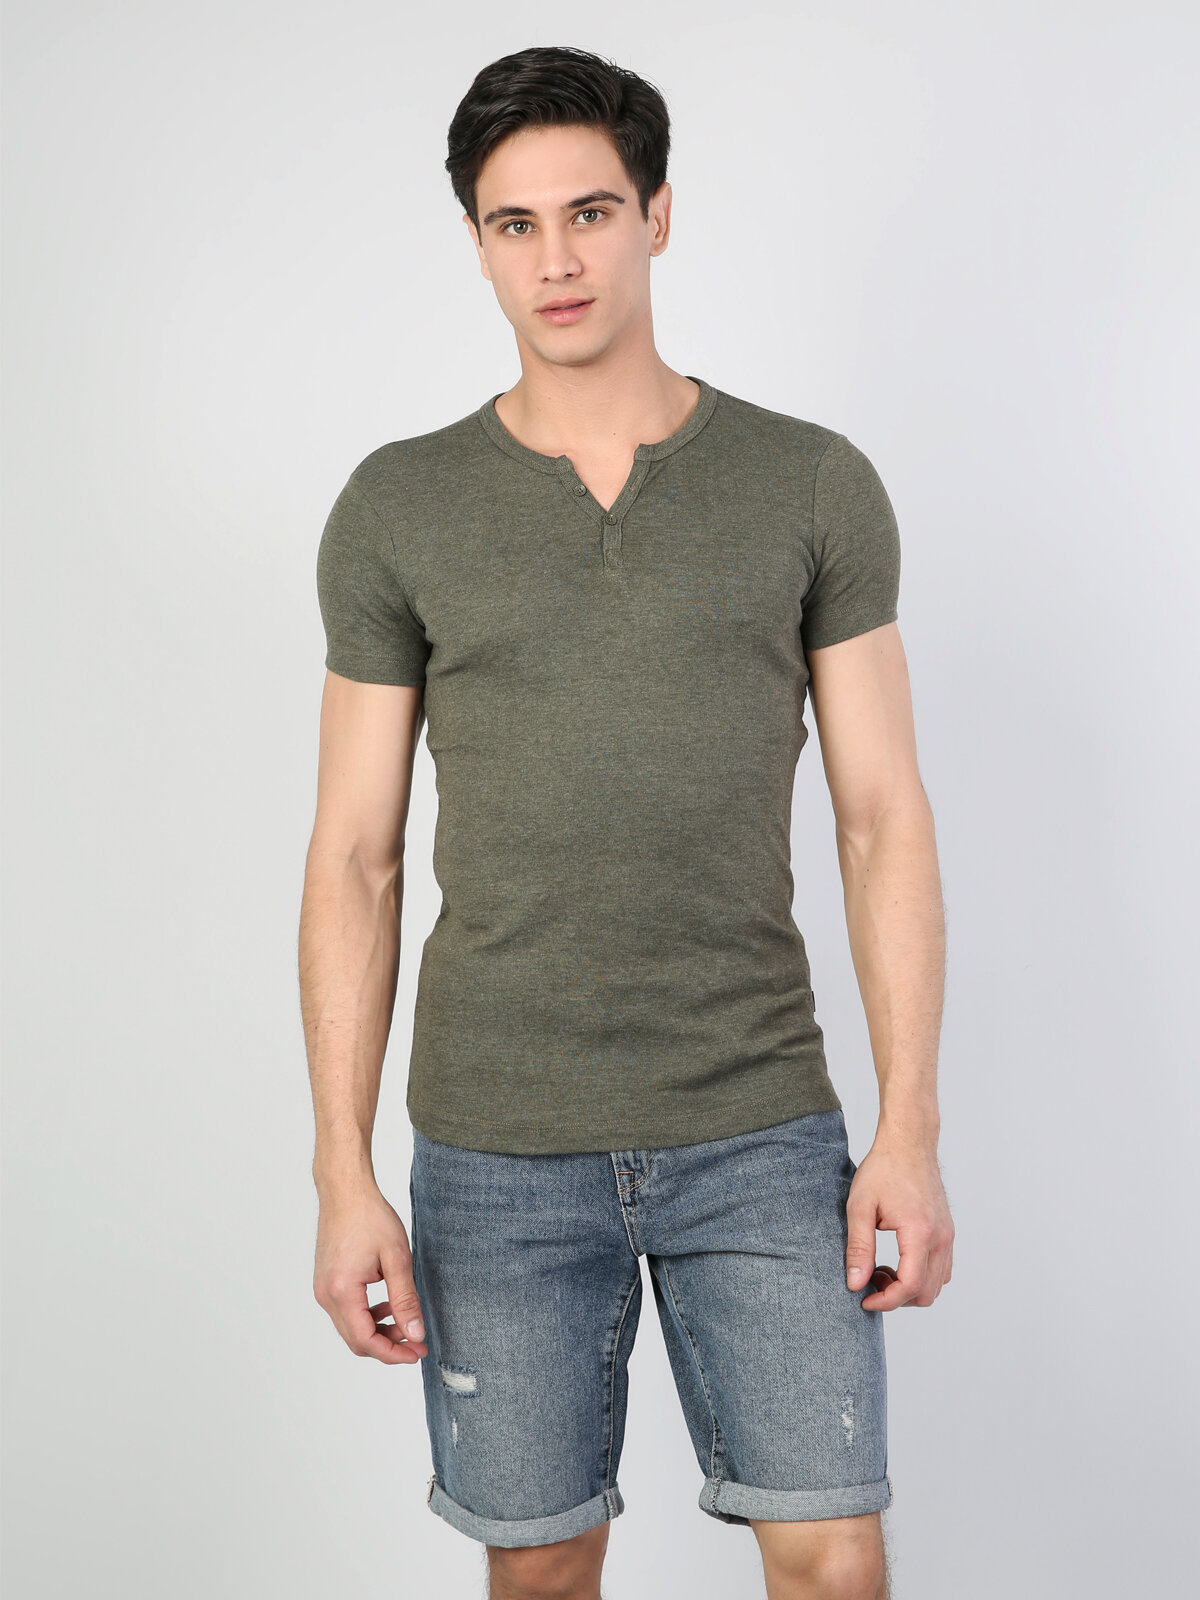 Colins Green Men Short Sleeve Tshirt. 4